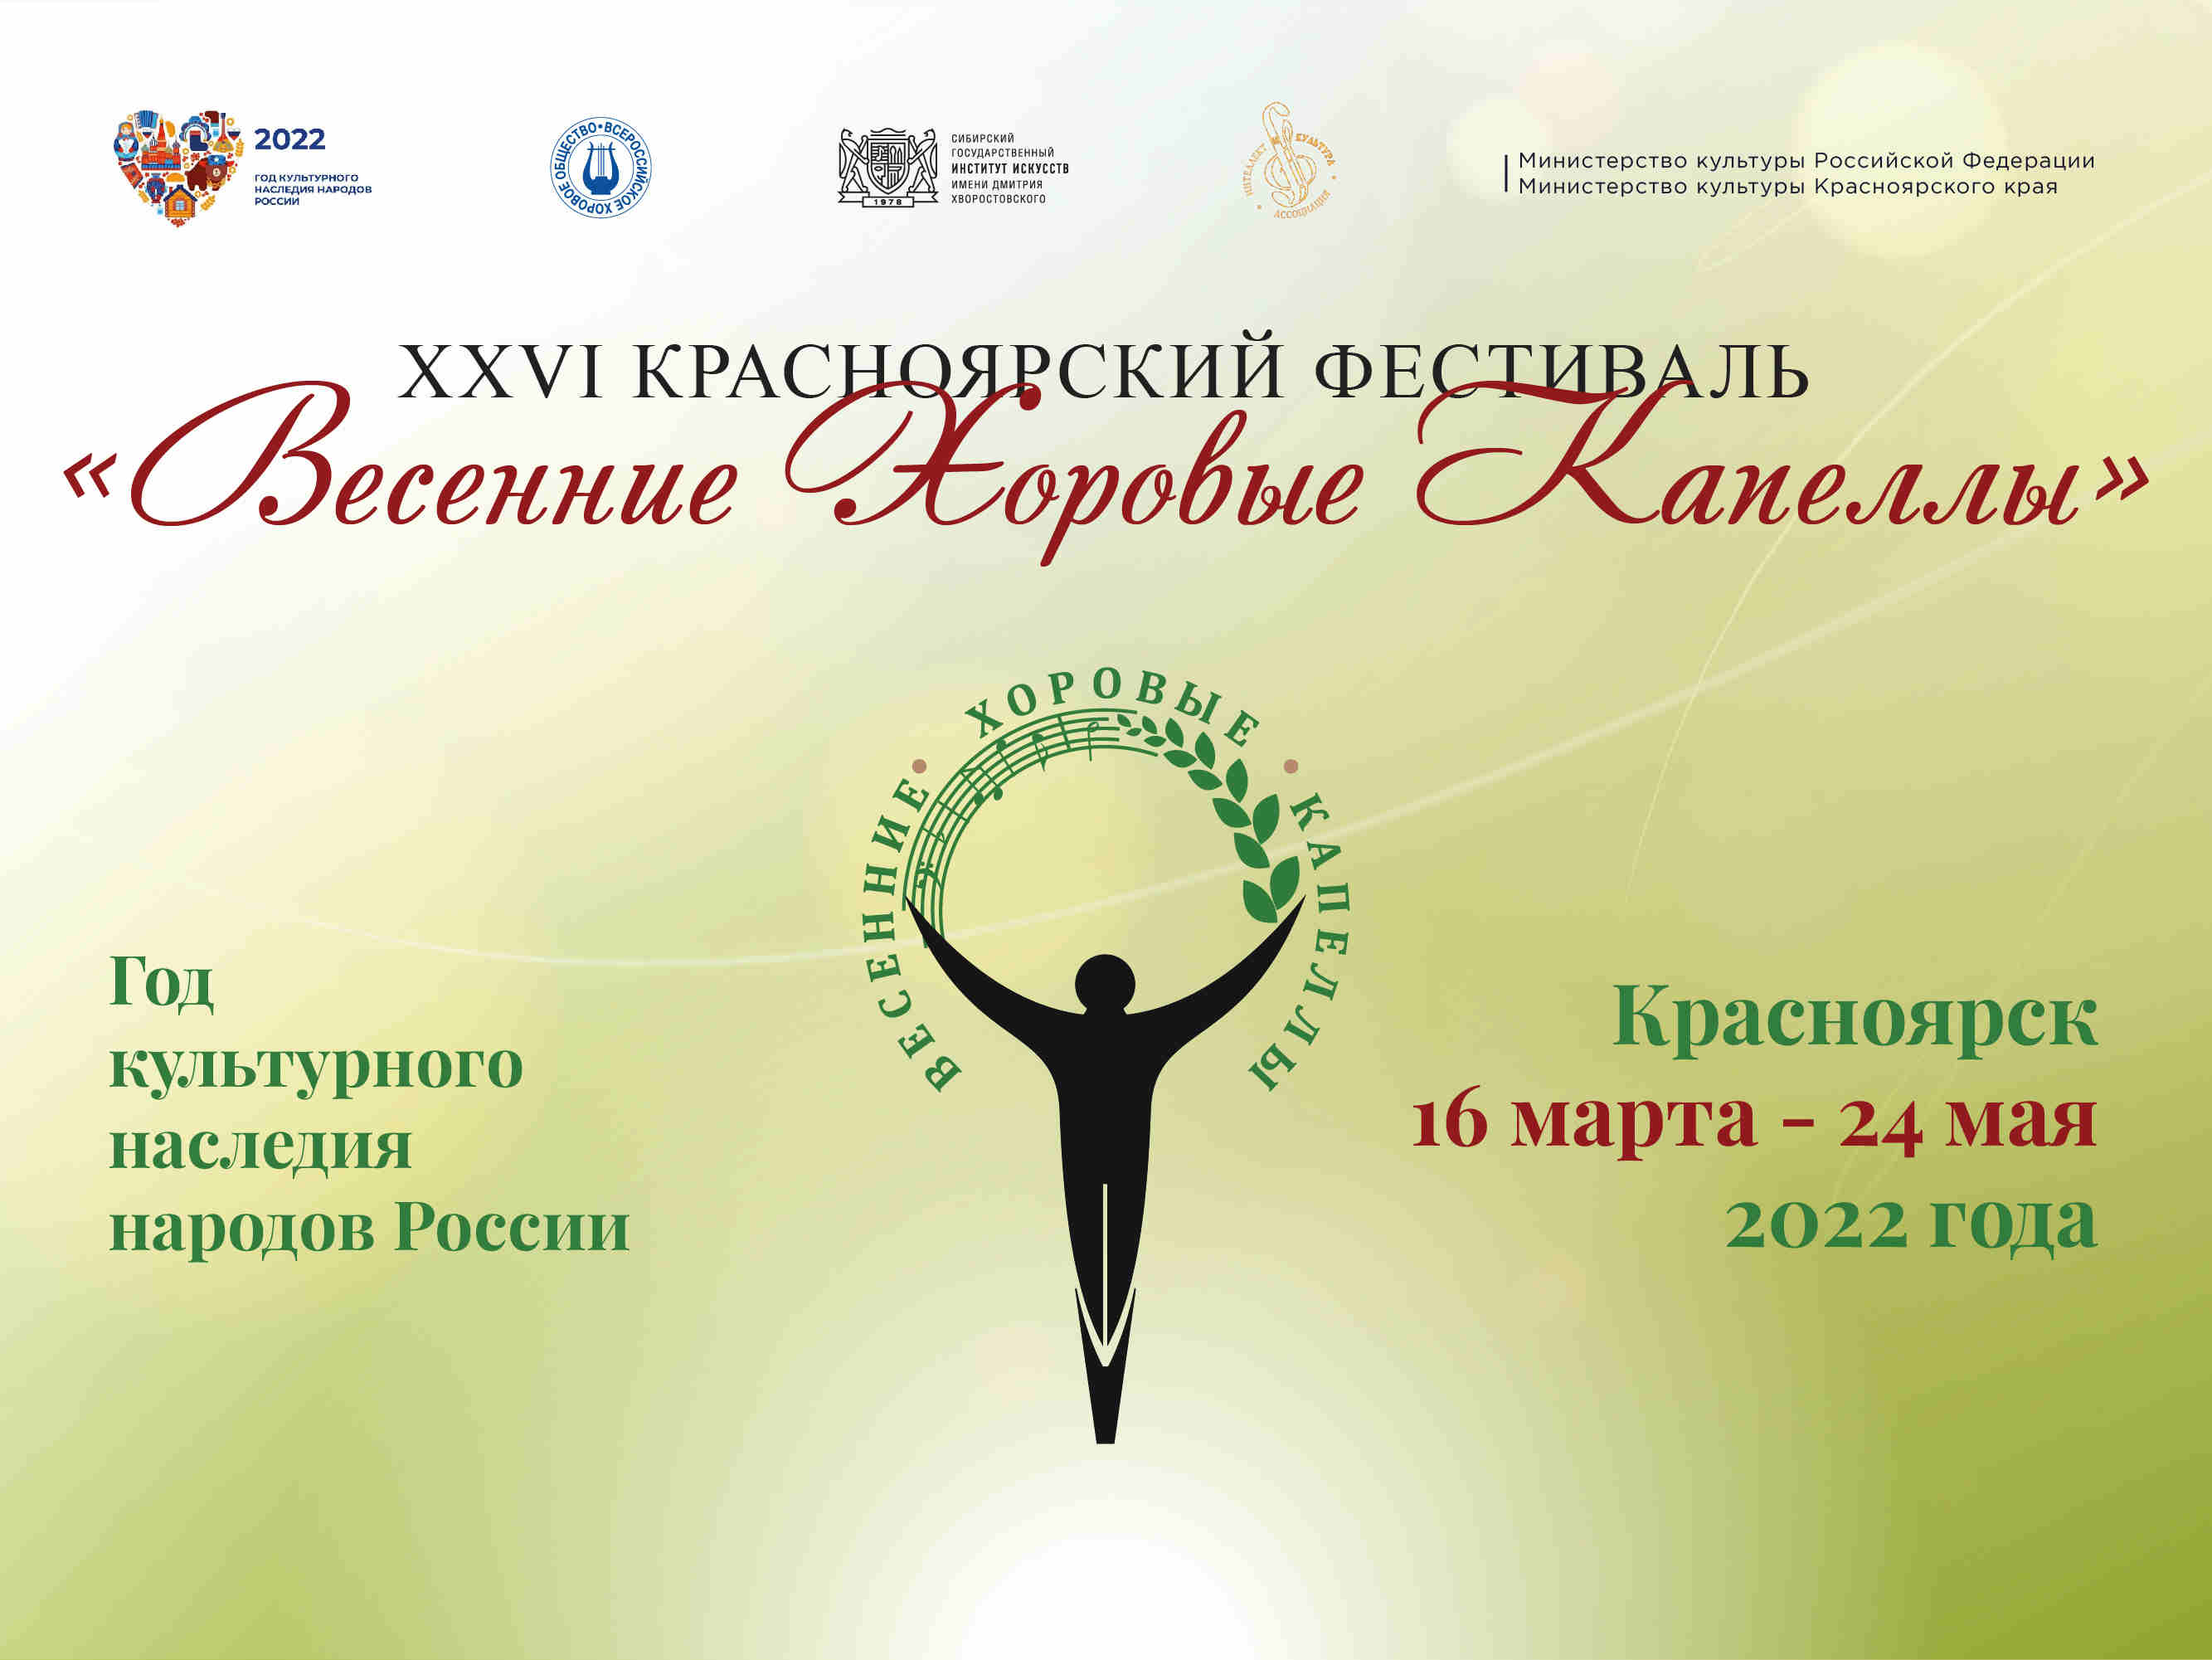 В Красноярске стартует XXVI Красноярский фестиваль «Весенние хоровые капеллы»